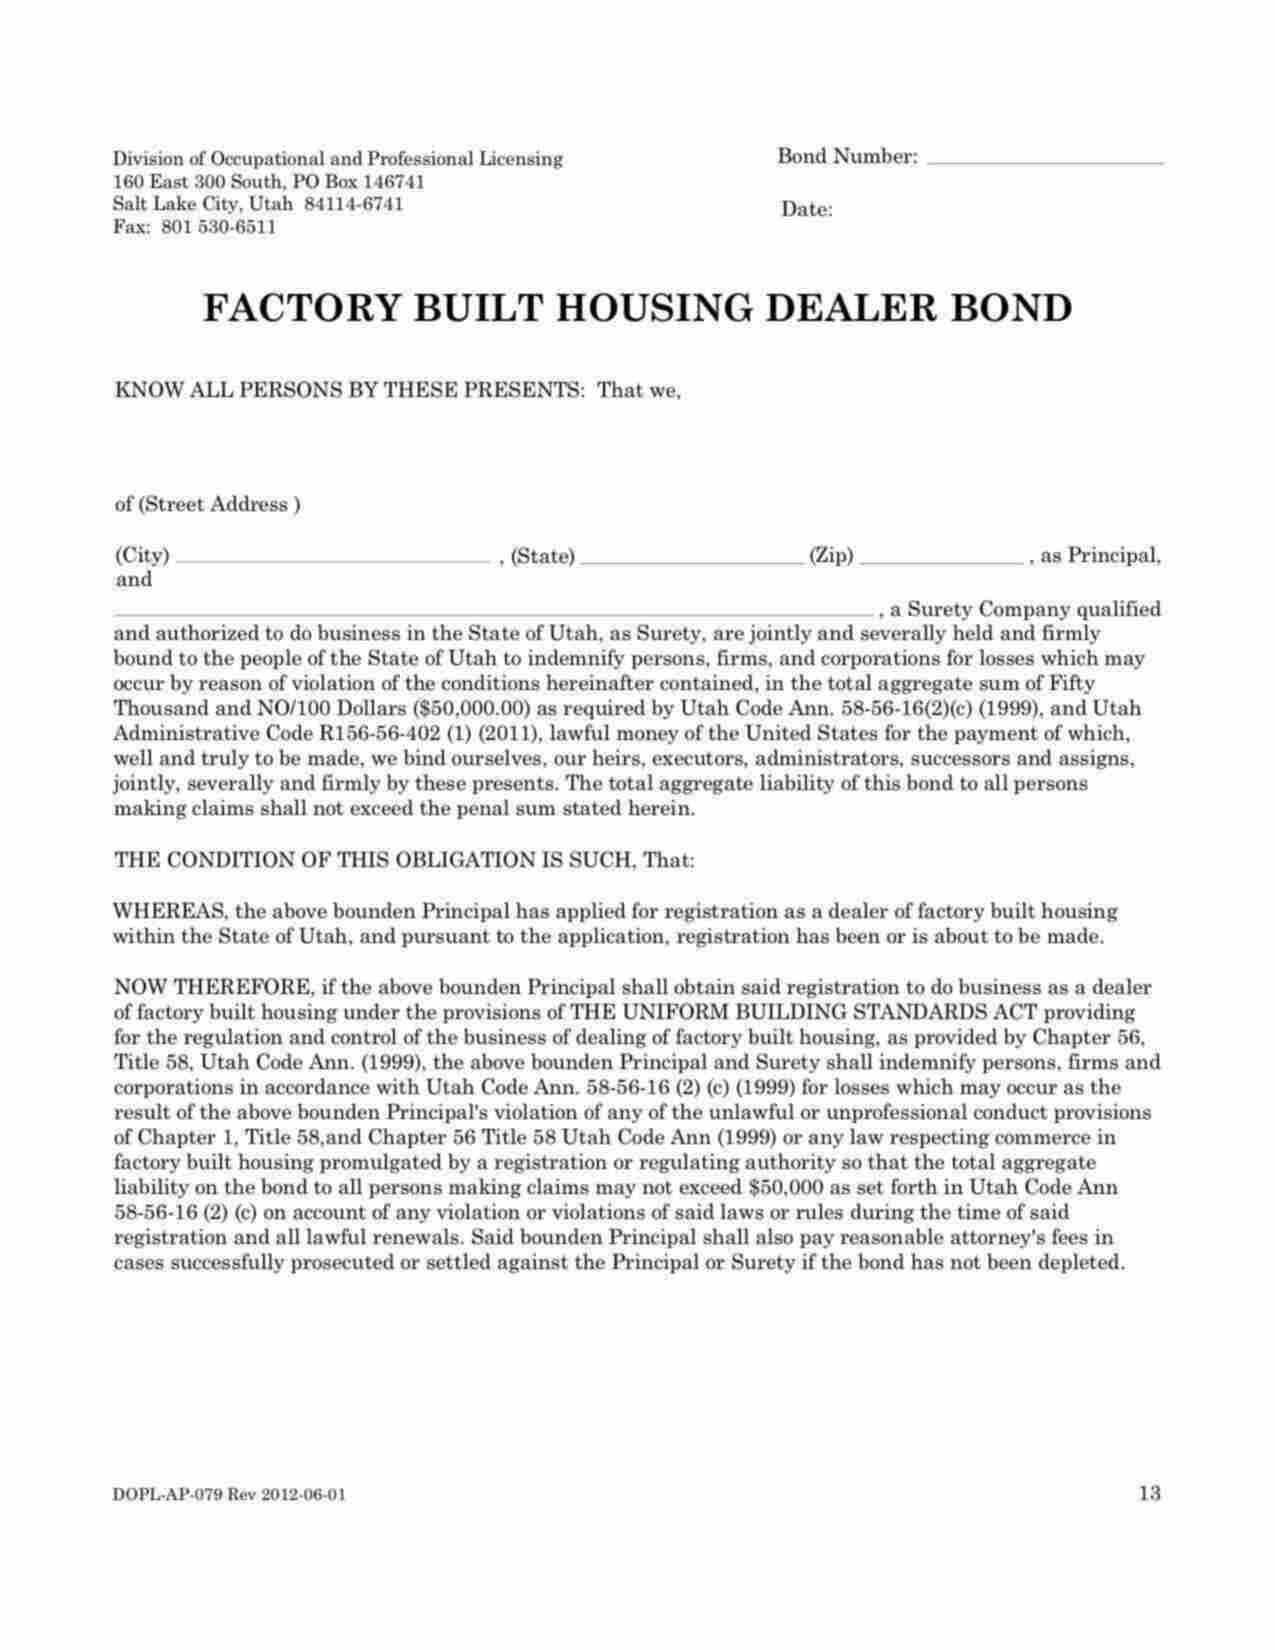 Utah Factory Built Housing Dealer Bond Form